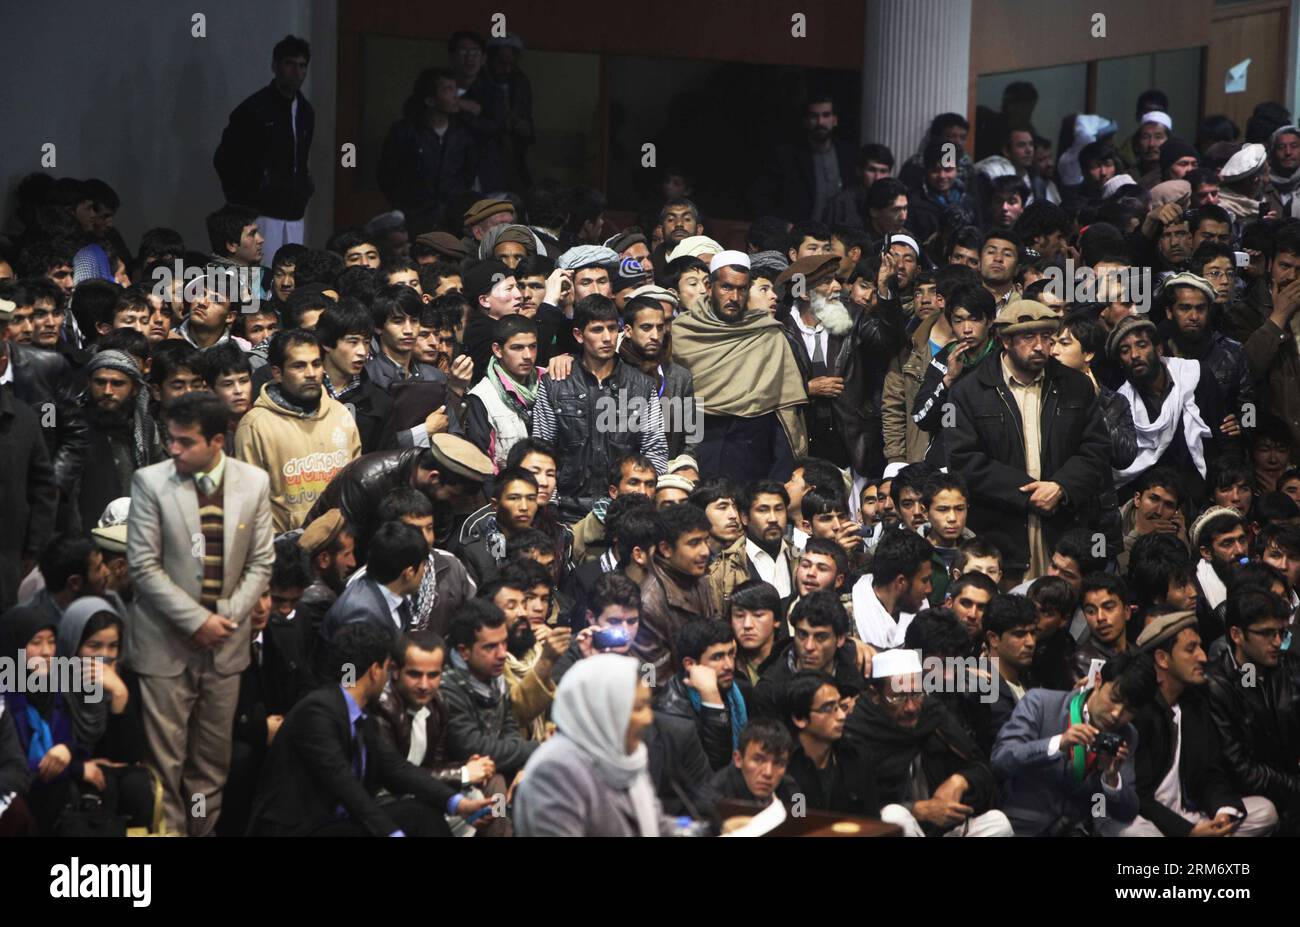 (140203) -- KABUL, 3 febbraio 2014 (Xinhua) -- i sostenitori del candidato presidenziale Zalmai Rasoul ascoltano il suo discorso durante un raduno elettorale a Kabul, Afghanistan, il 3 febbraio 2014. Lunedì scorso, un ex ministro degli Esteri Zalmai Rasoul ha promesso di sostenere la libertà di stampa e di rafforzare la democrazia nell'Afghanistan post-talebano se vincerà le prossime elezioni.(Xinhua/Ahmad Massoud) AFGHANISTAN-KABUL-CAMPAGNA ELETTORALE PUBLICATIONxNOTxINxCHN Kabul 3 febbraio 2014 XINHUA sostenitori del candidato presidenziale Zalmai Rasoul elenca al suo discorso durante la riunione ELETTORALE a Kabul Foto Stock